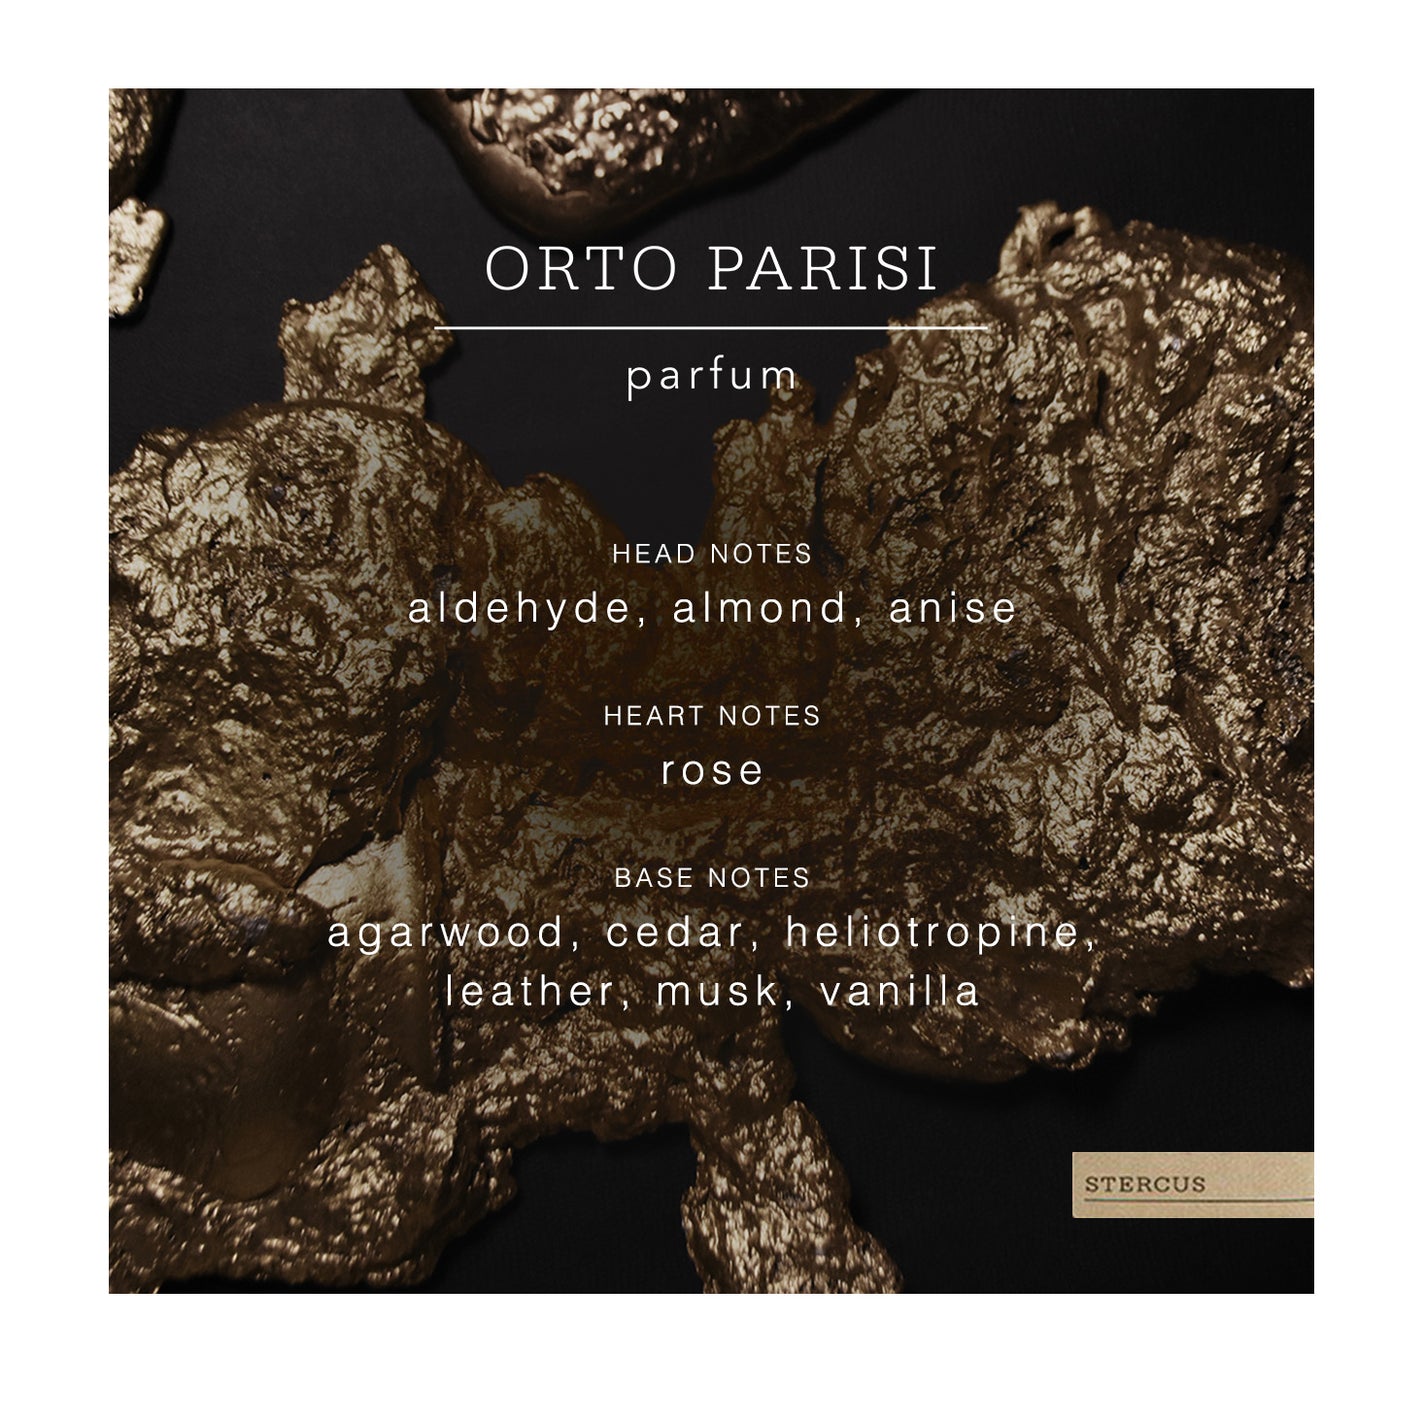 Sample Vial - Orto Parisi Stercus Parfum